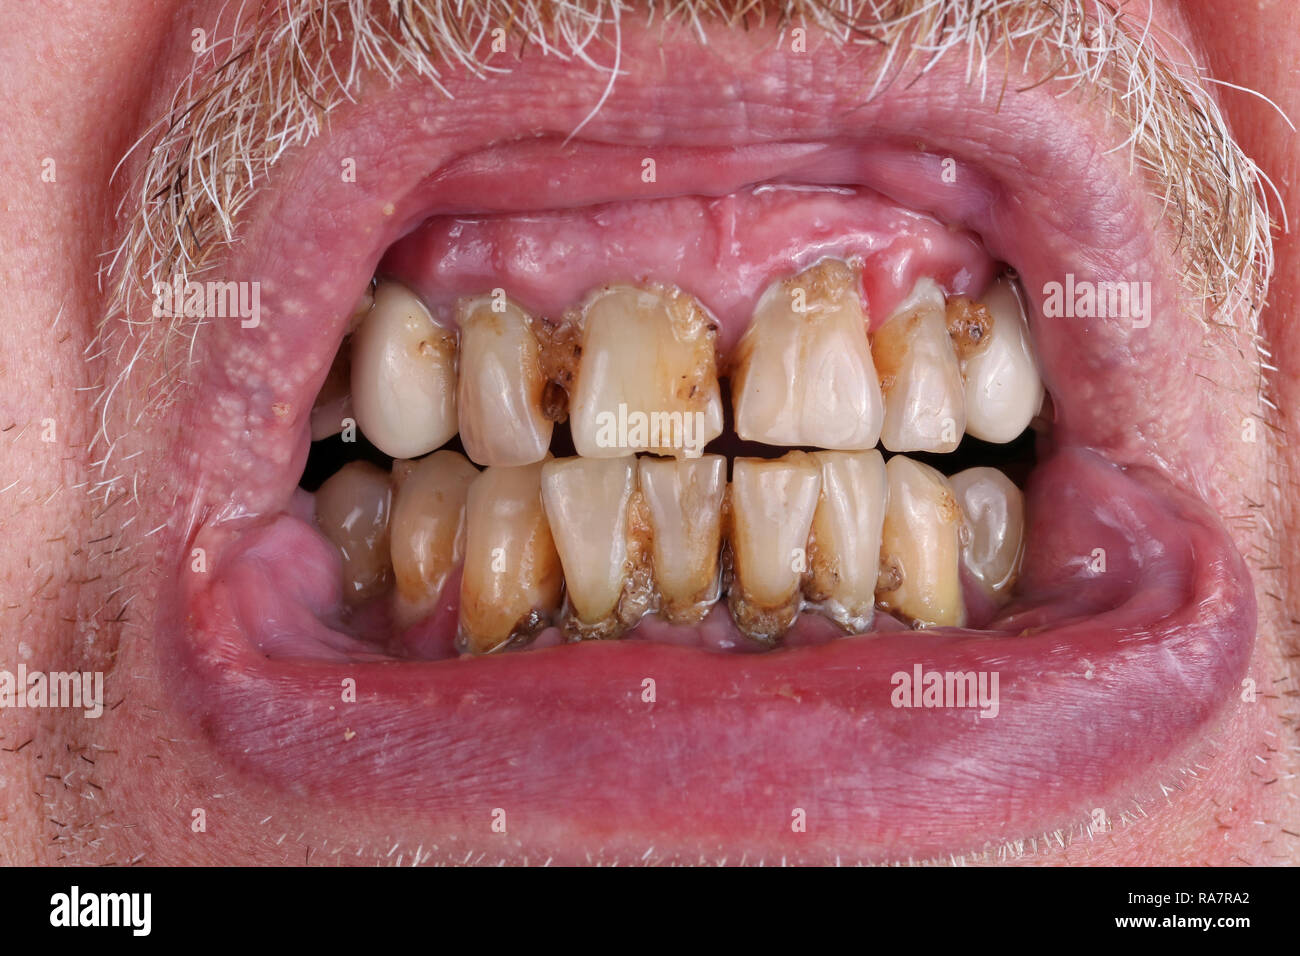 Les dents d'un homme âgé sont gâtés par les caries, le tartre et la mauvaise alimentation déchets macro. Les méfaits de l'alcool et le tabac. Macro Studio shot Banque D'Images